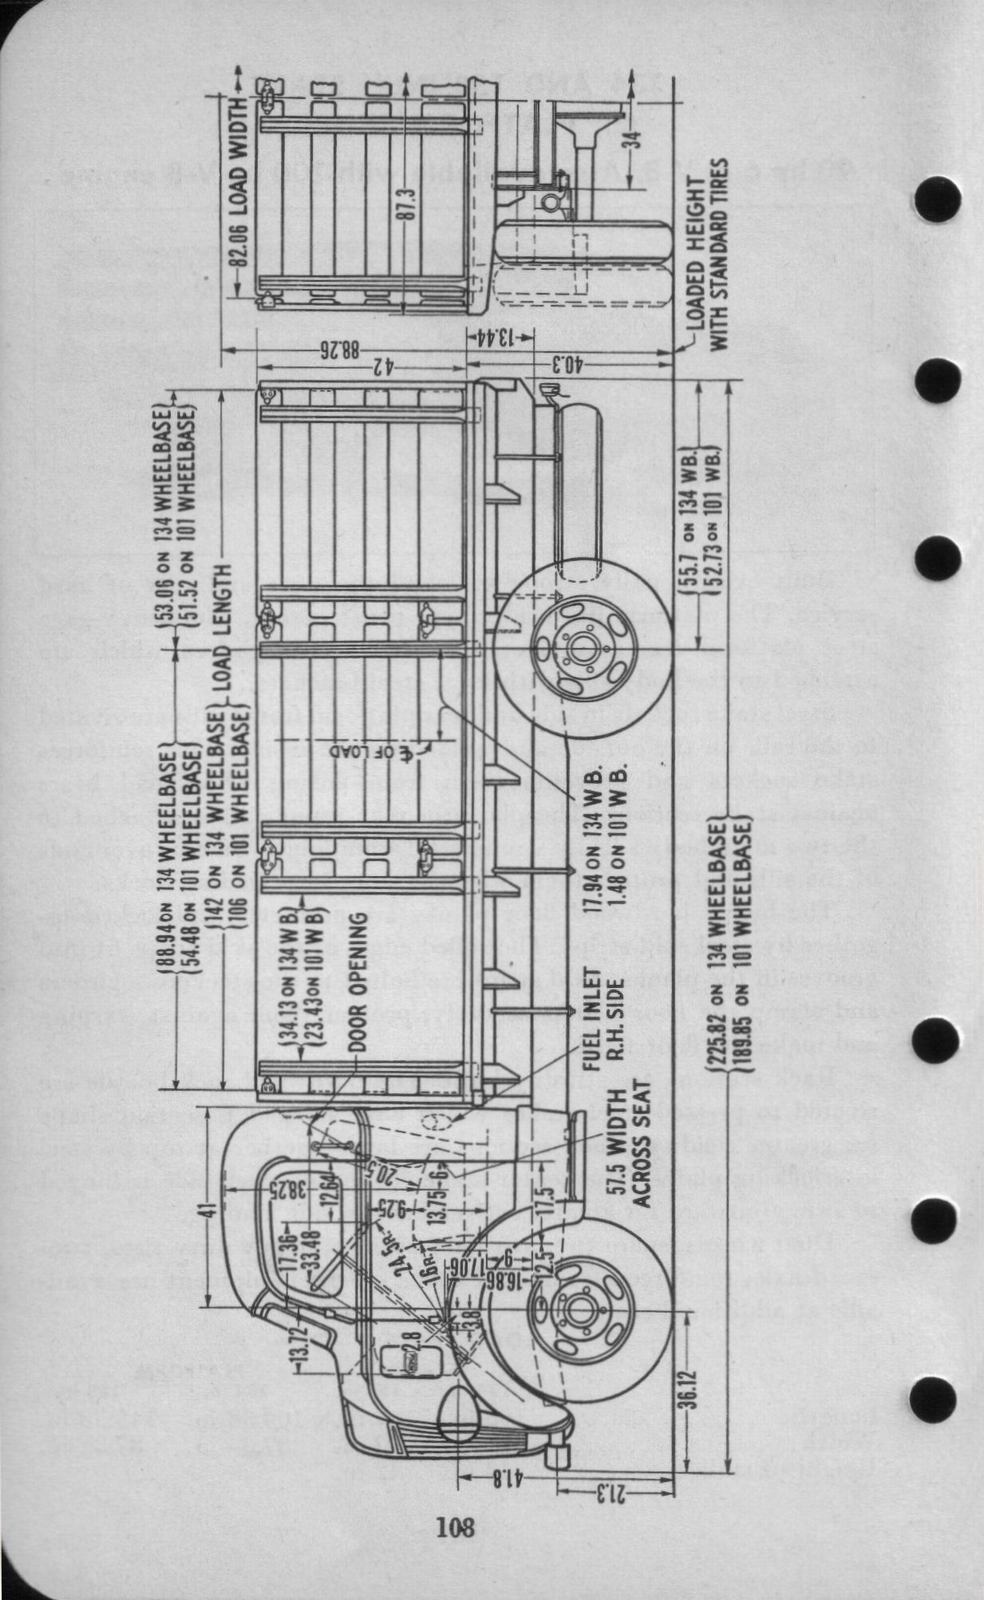 n_1942 Ford Salesmans Reference Manual-108.jpg